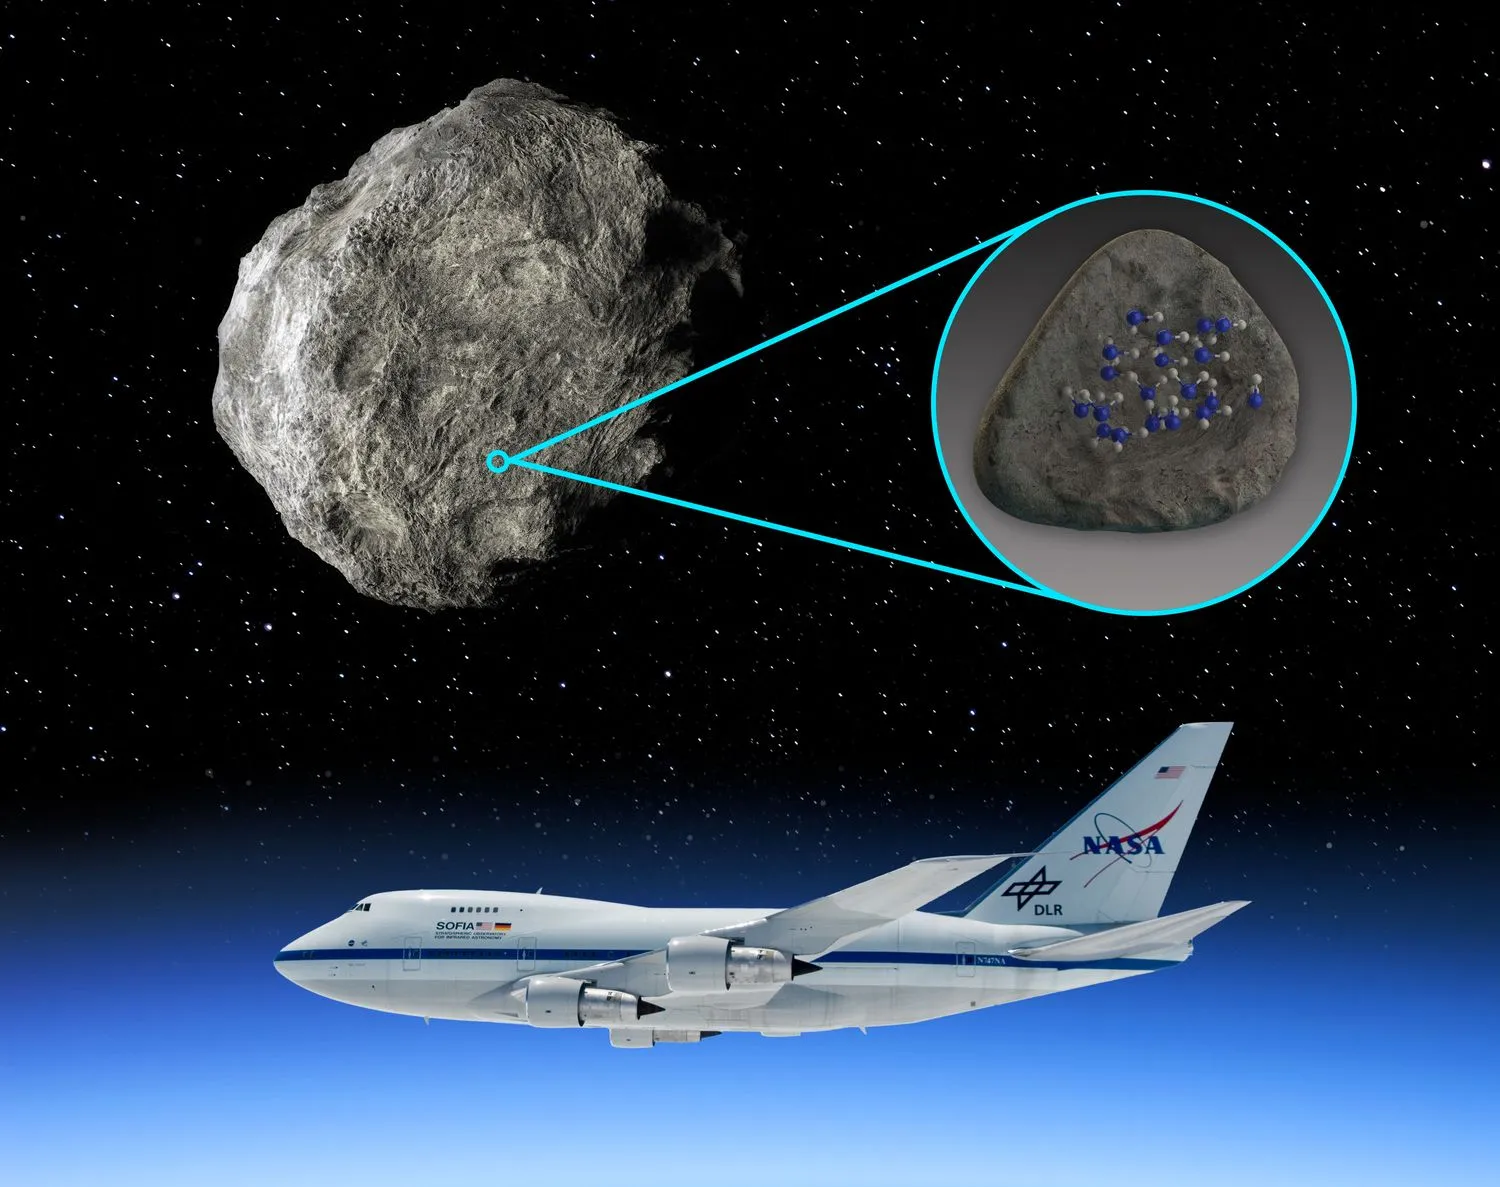 Auf der linken Seite, die die Hälfte des Bildes einnimmt, hängt ein großer Asteroid im Weltraum. Auf der rechten Seite dient ein blauer Kreis als Vergrößerungsfläche mit blauen Linien, die tangential vom oberen und unteren Rand des Kreises verlaufen und auf einem kleineren Kreis auf dem Asteroiden zusammenlaufen. in dem blauen Kreis befindet sich ein glatter grauer Felsen mit blauen und weißen Punkten darauf. Darunter, am blauen Himmel, ein Flugzeug mit 'NASA' auf der Heckflosse.